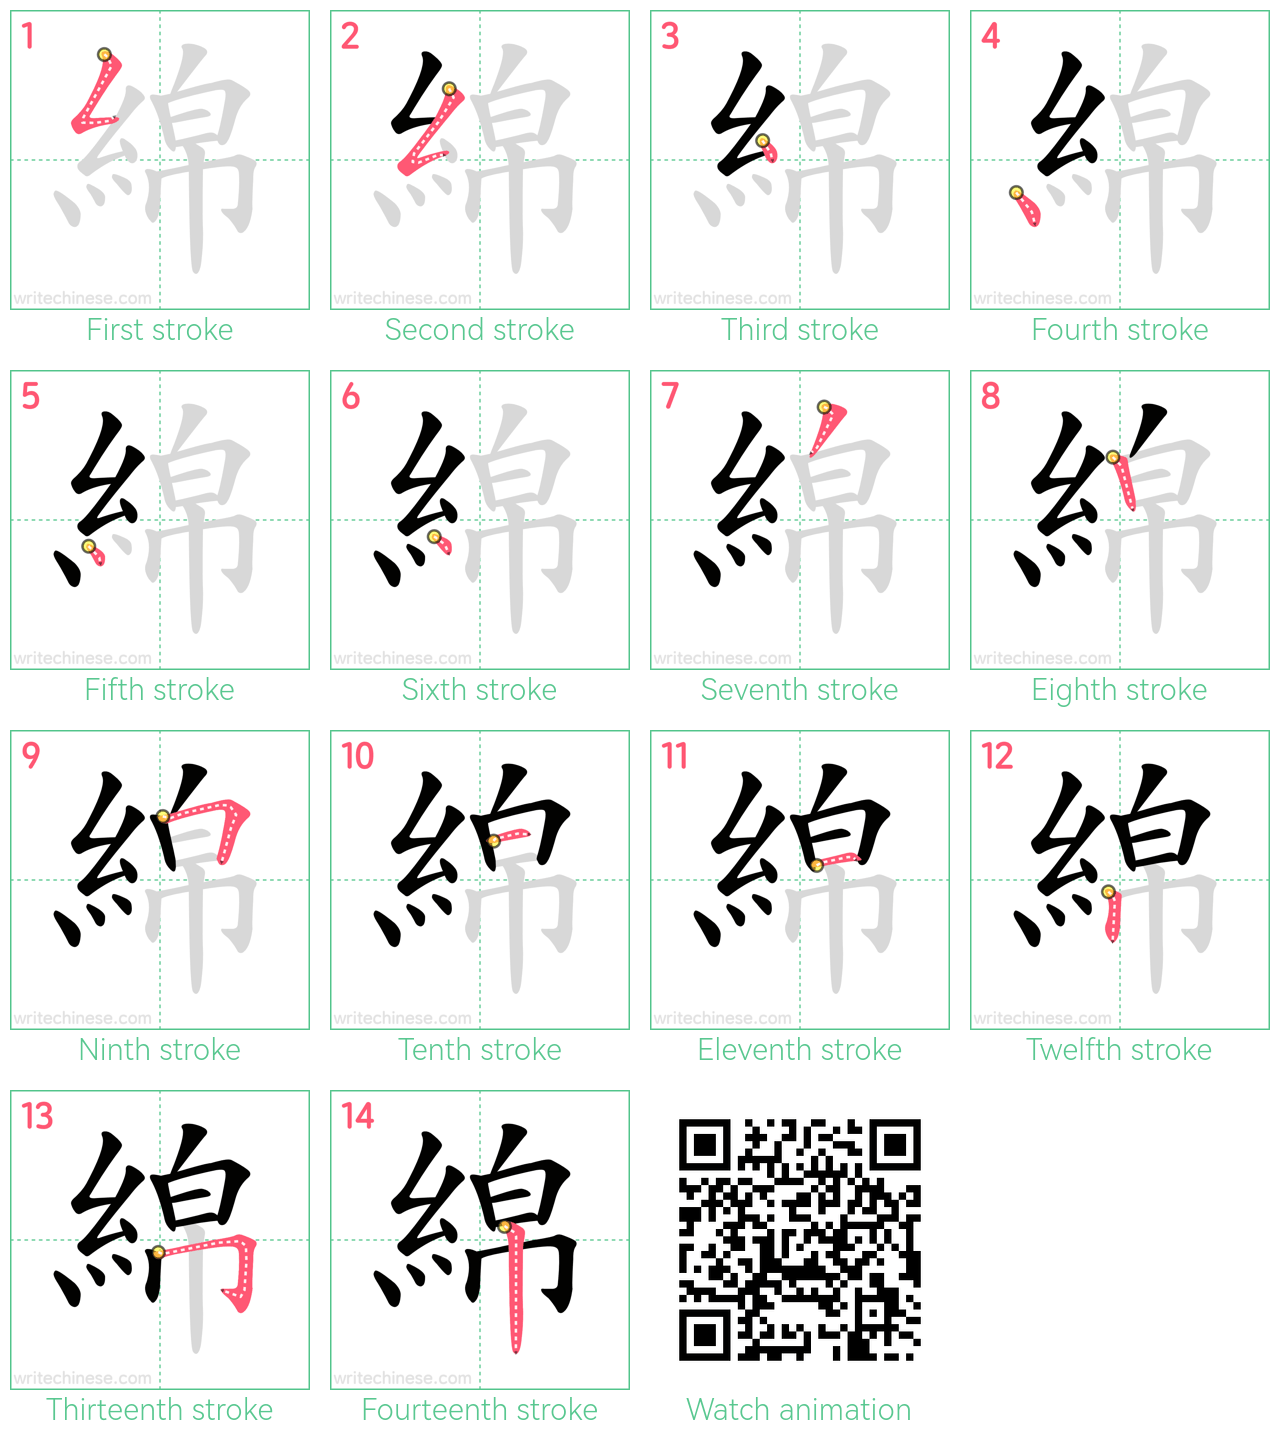 綿 step-by-step stroke order diagrams